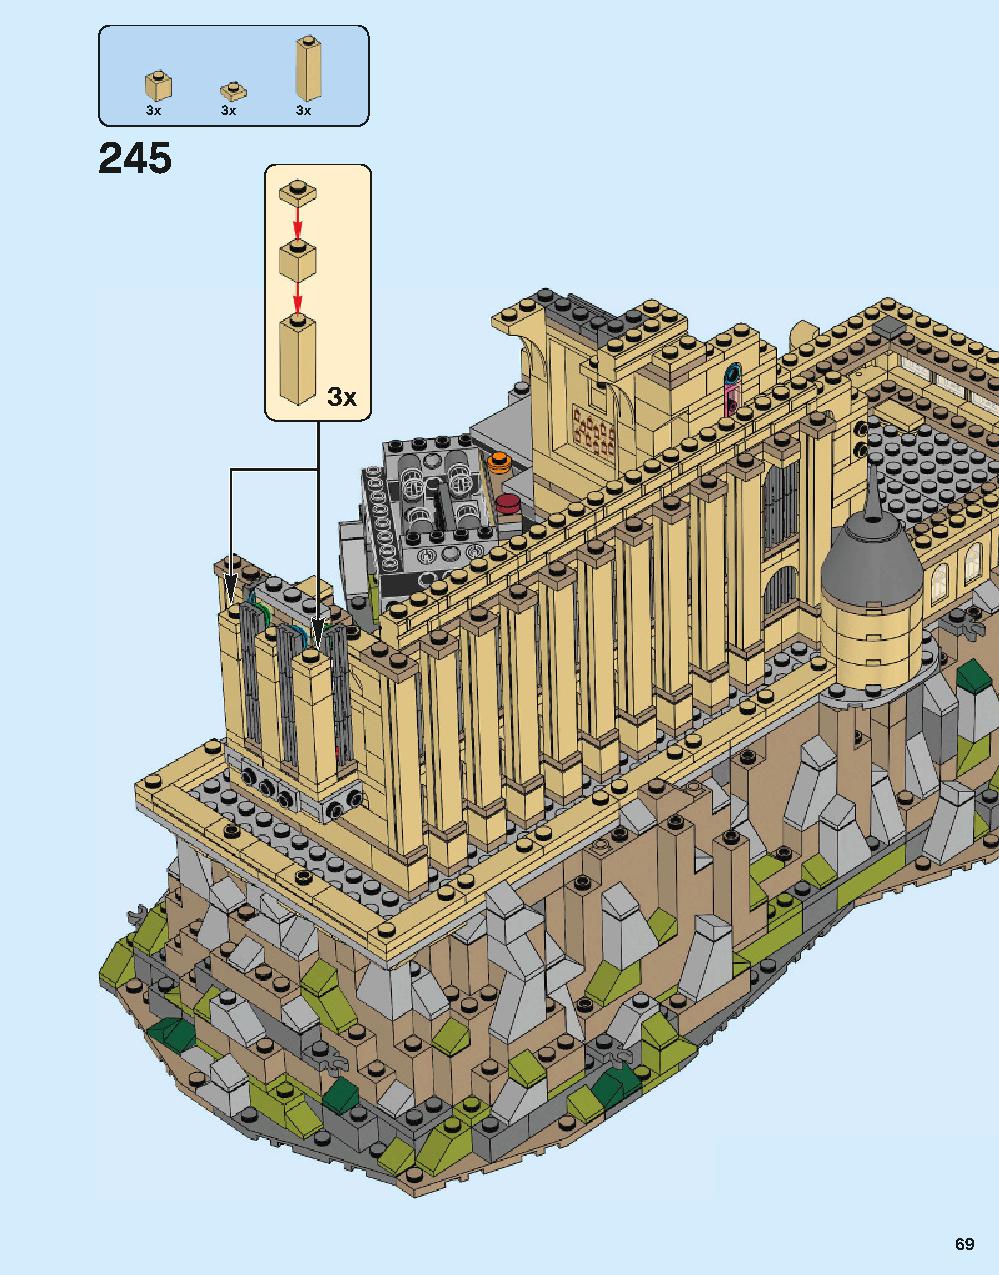 ホグワーツ城 71043 レゴの商品情報 レゴの説明書・組立方法 69 page